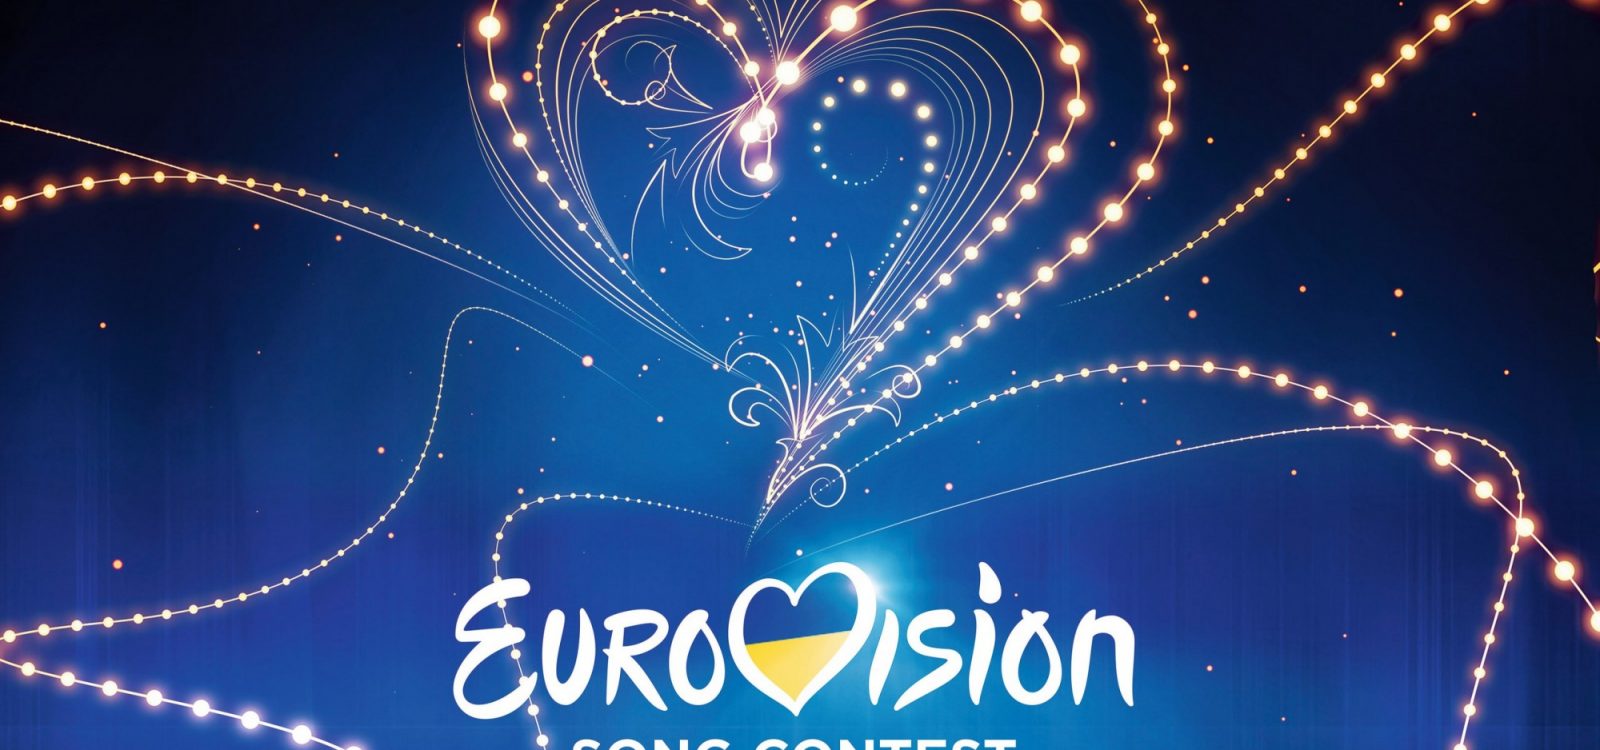 Eurovision, a major actuarial exercise?